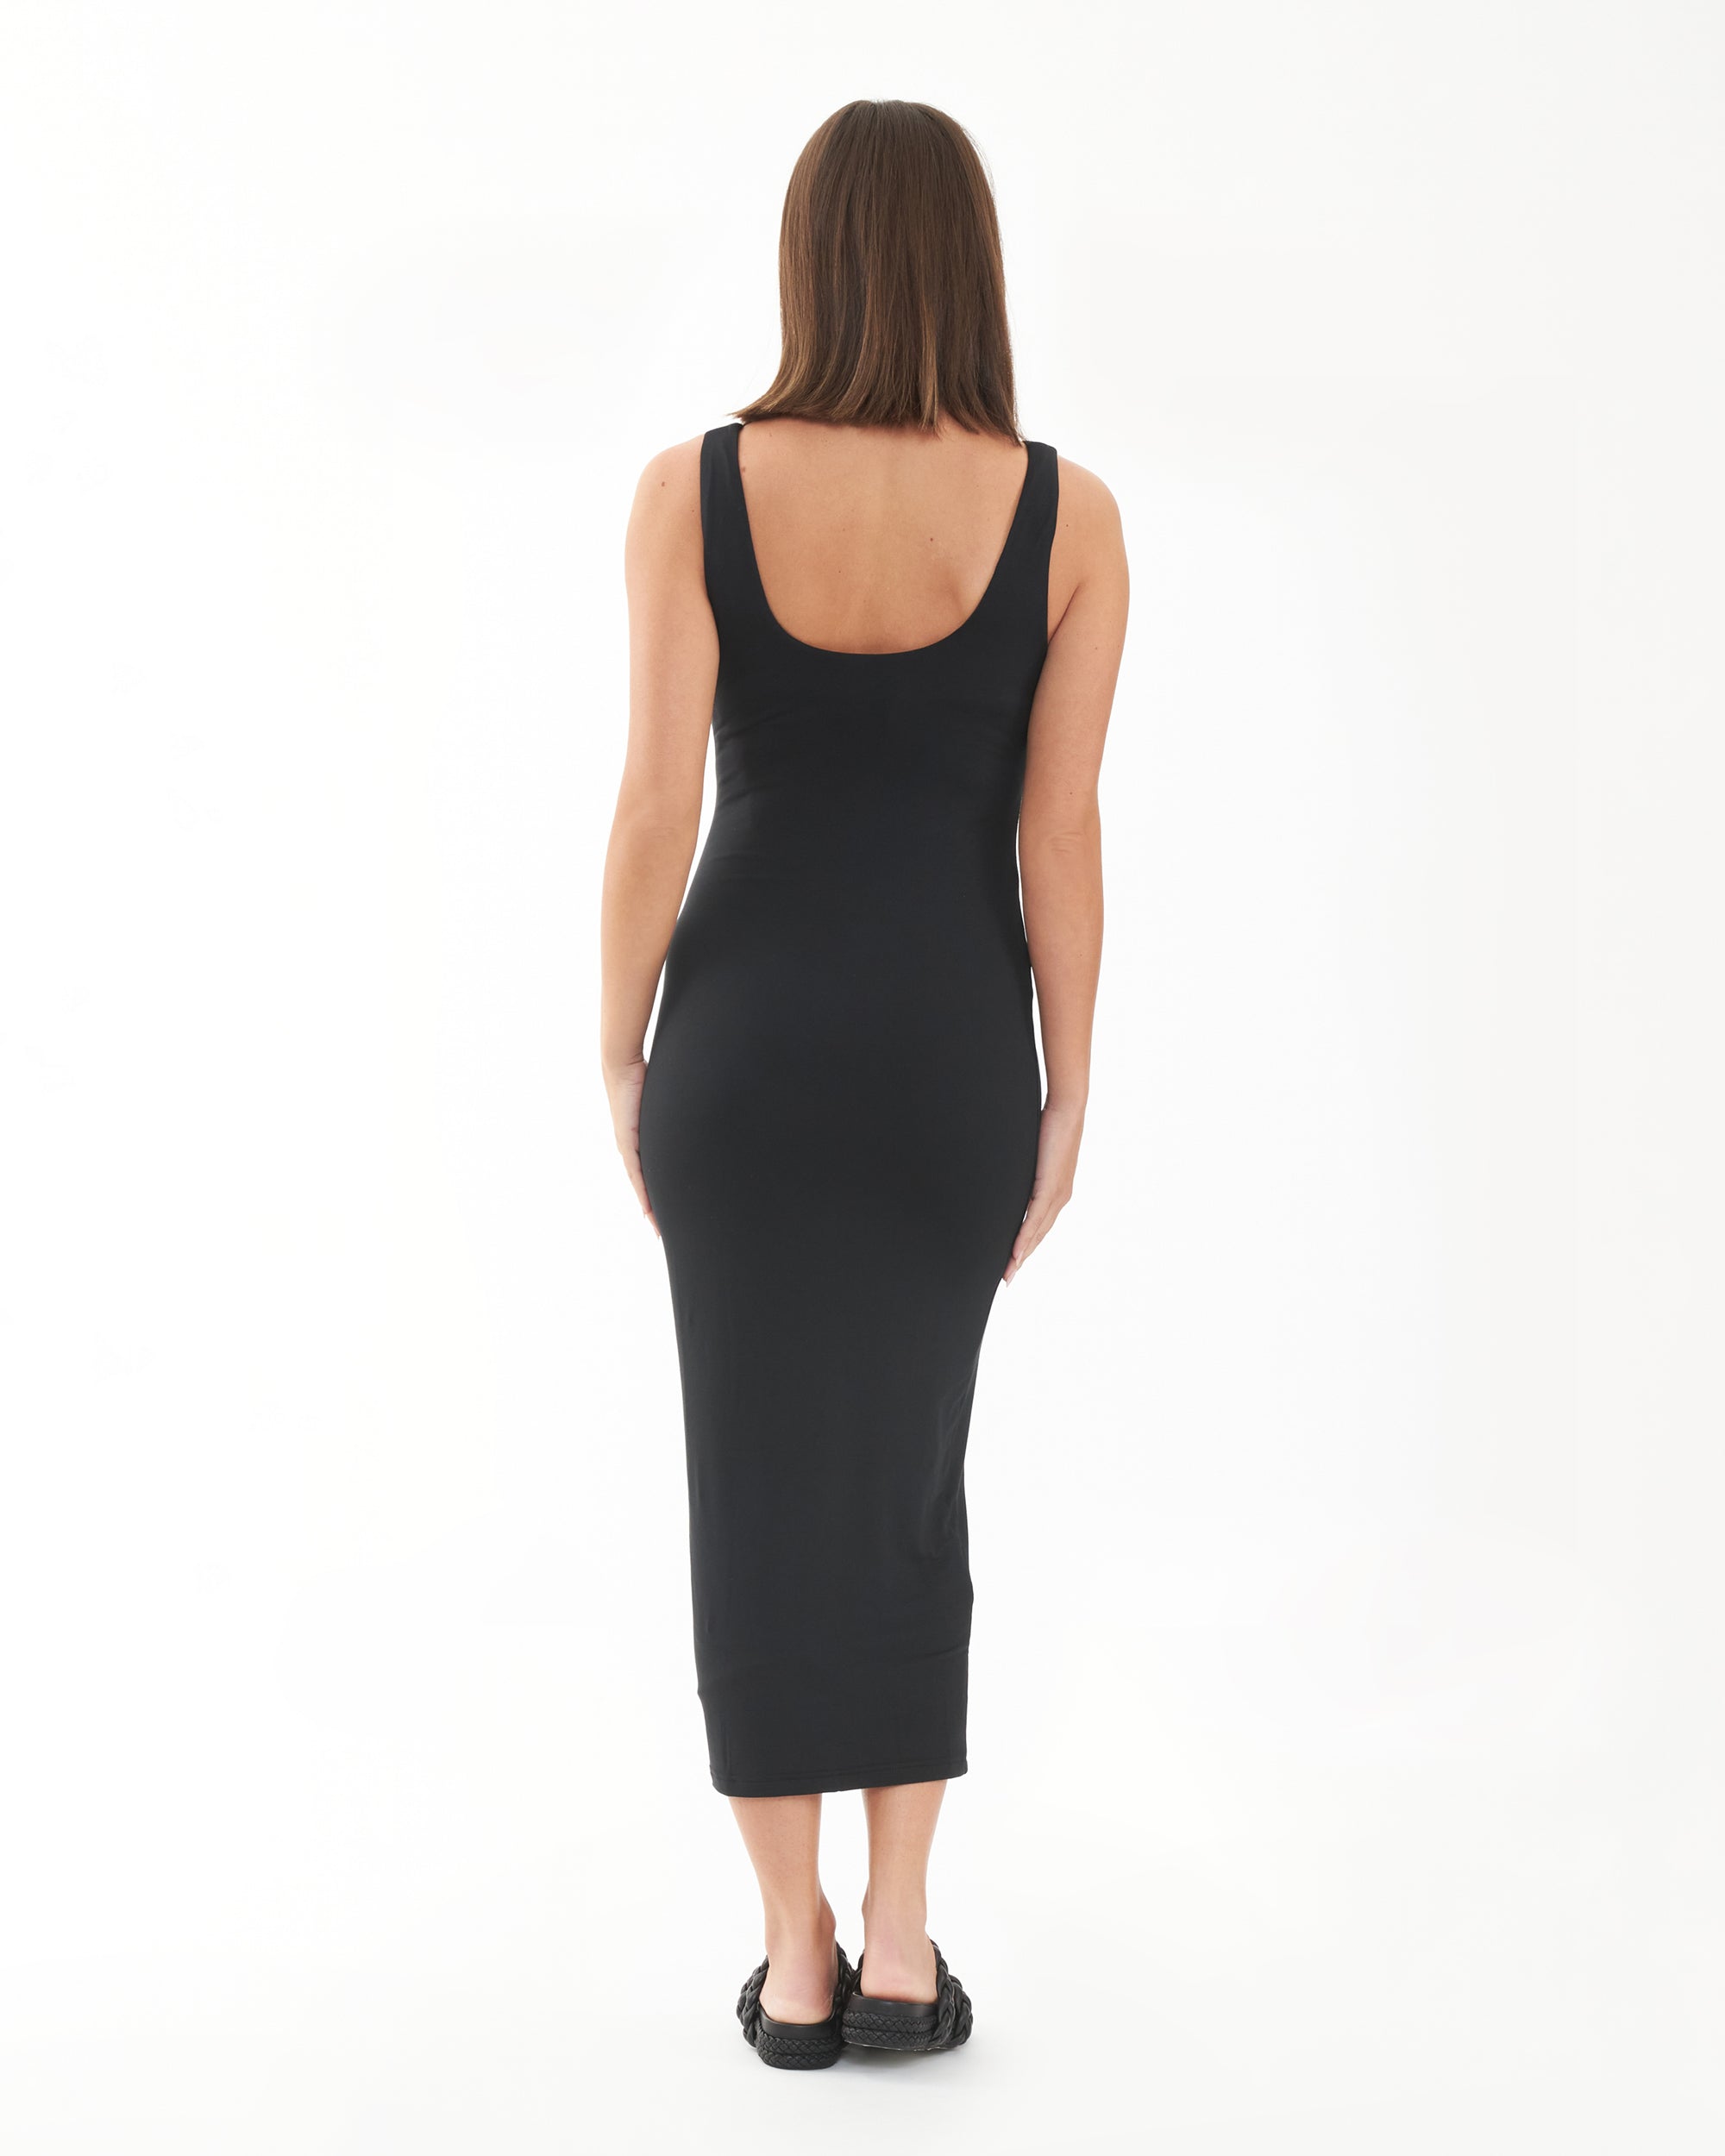 Luxe Knit Contour Dress Black